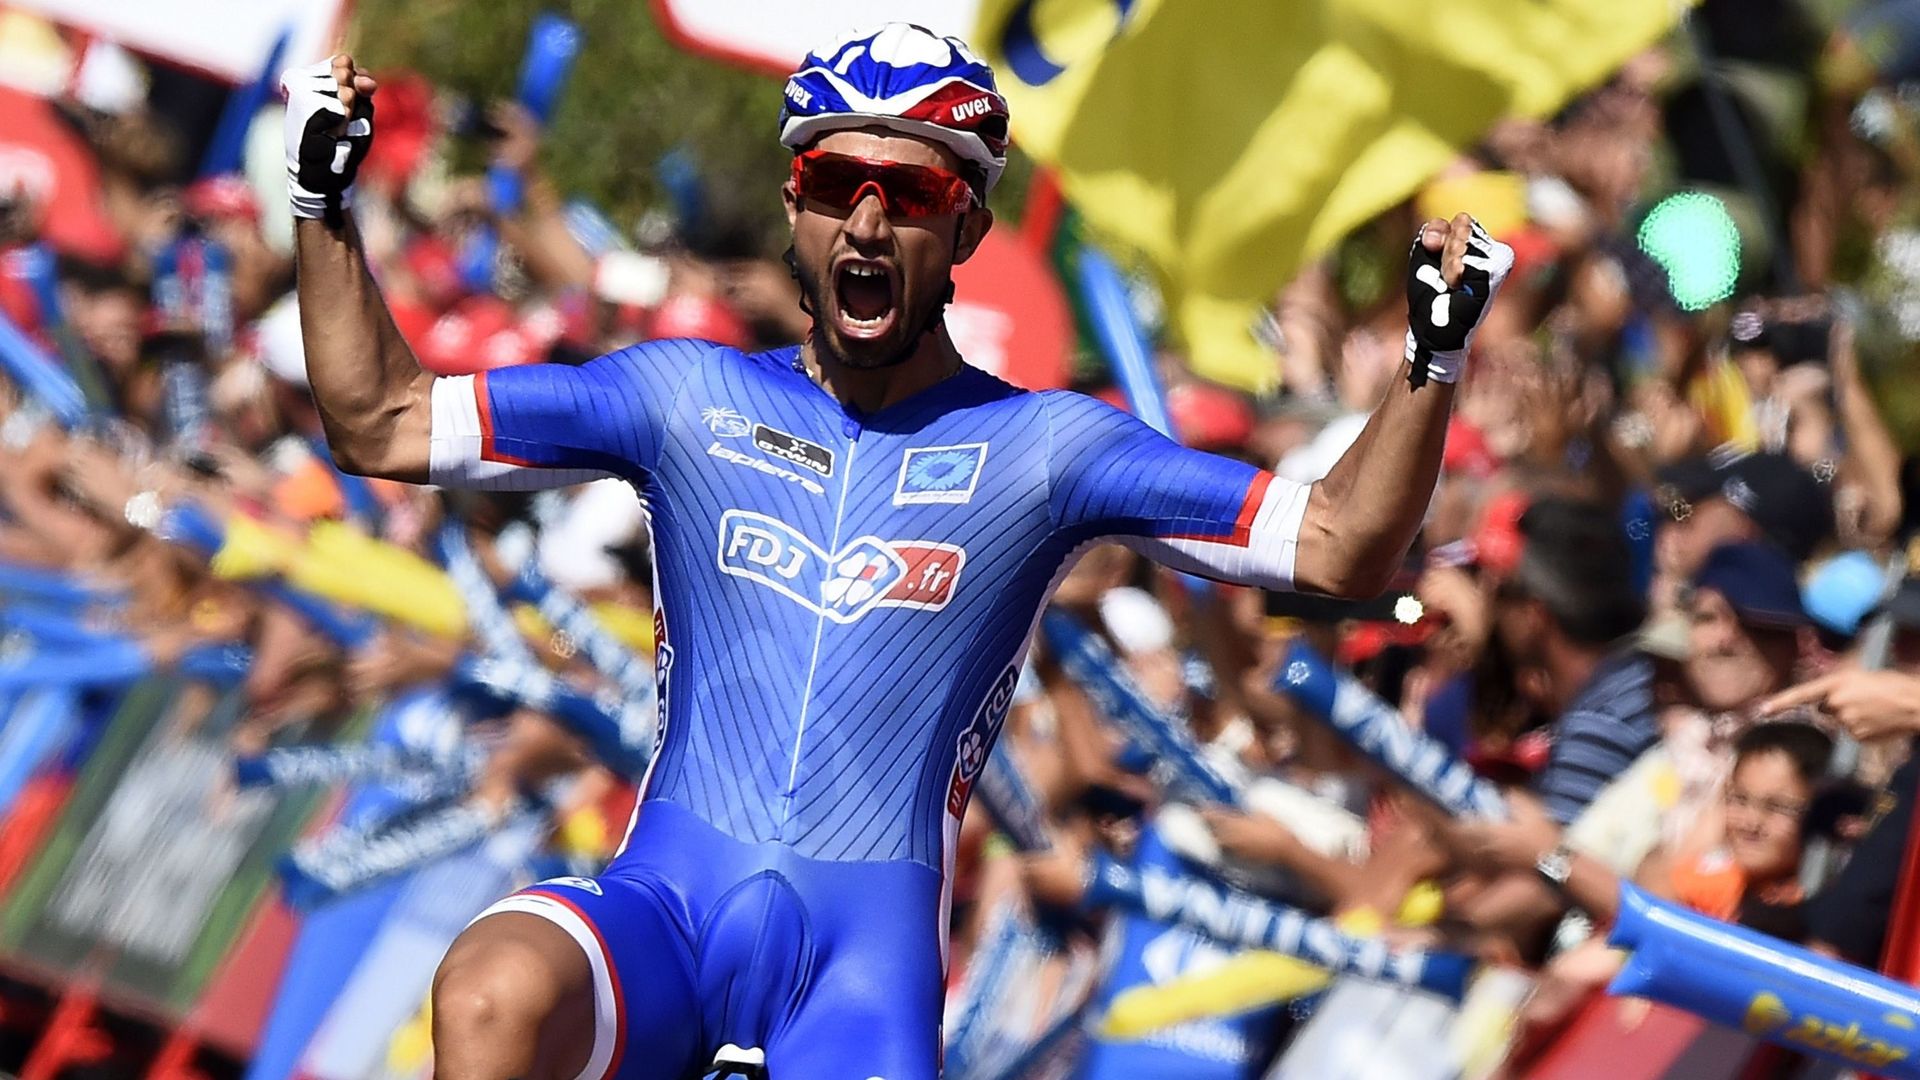 Nacer Bouhanni récidive sur la Vuelta